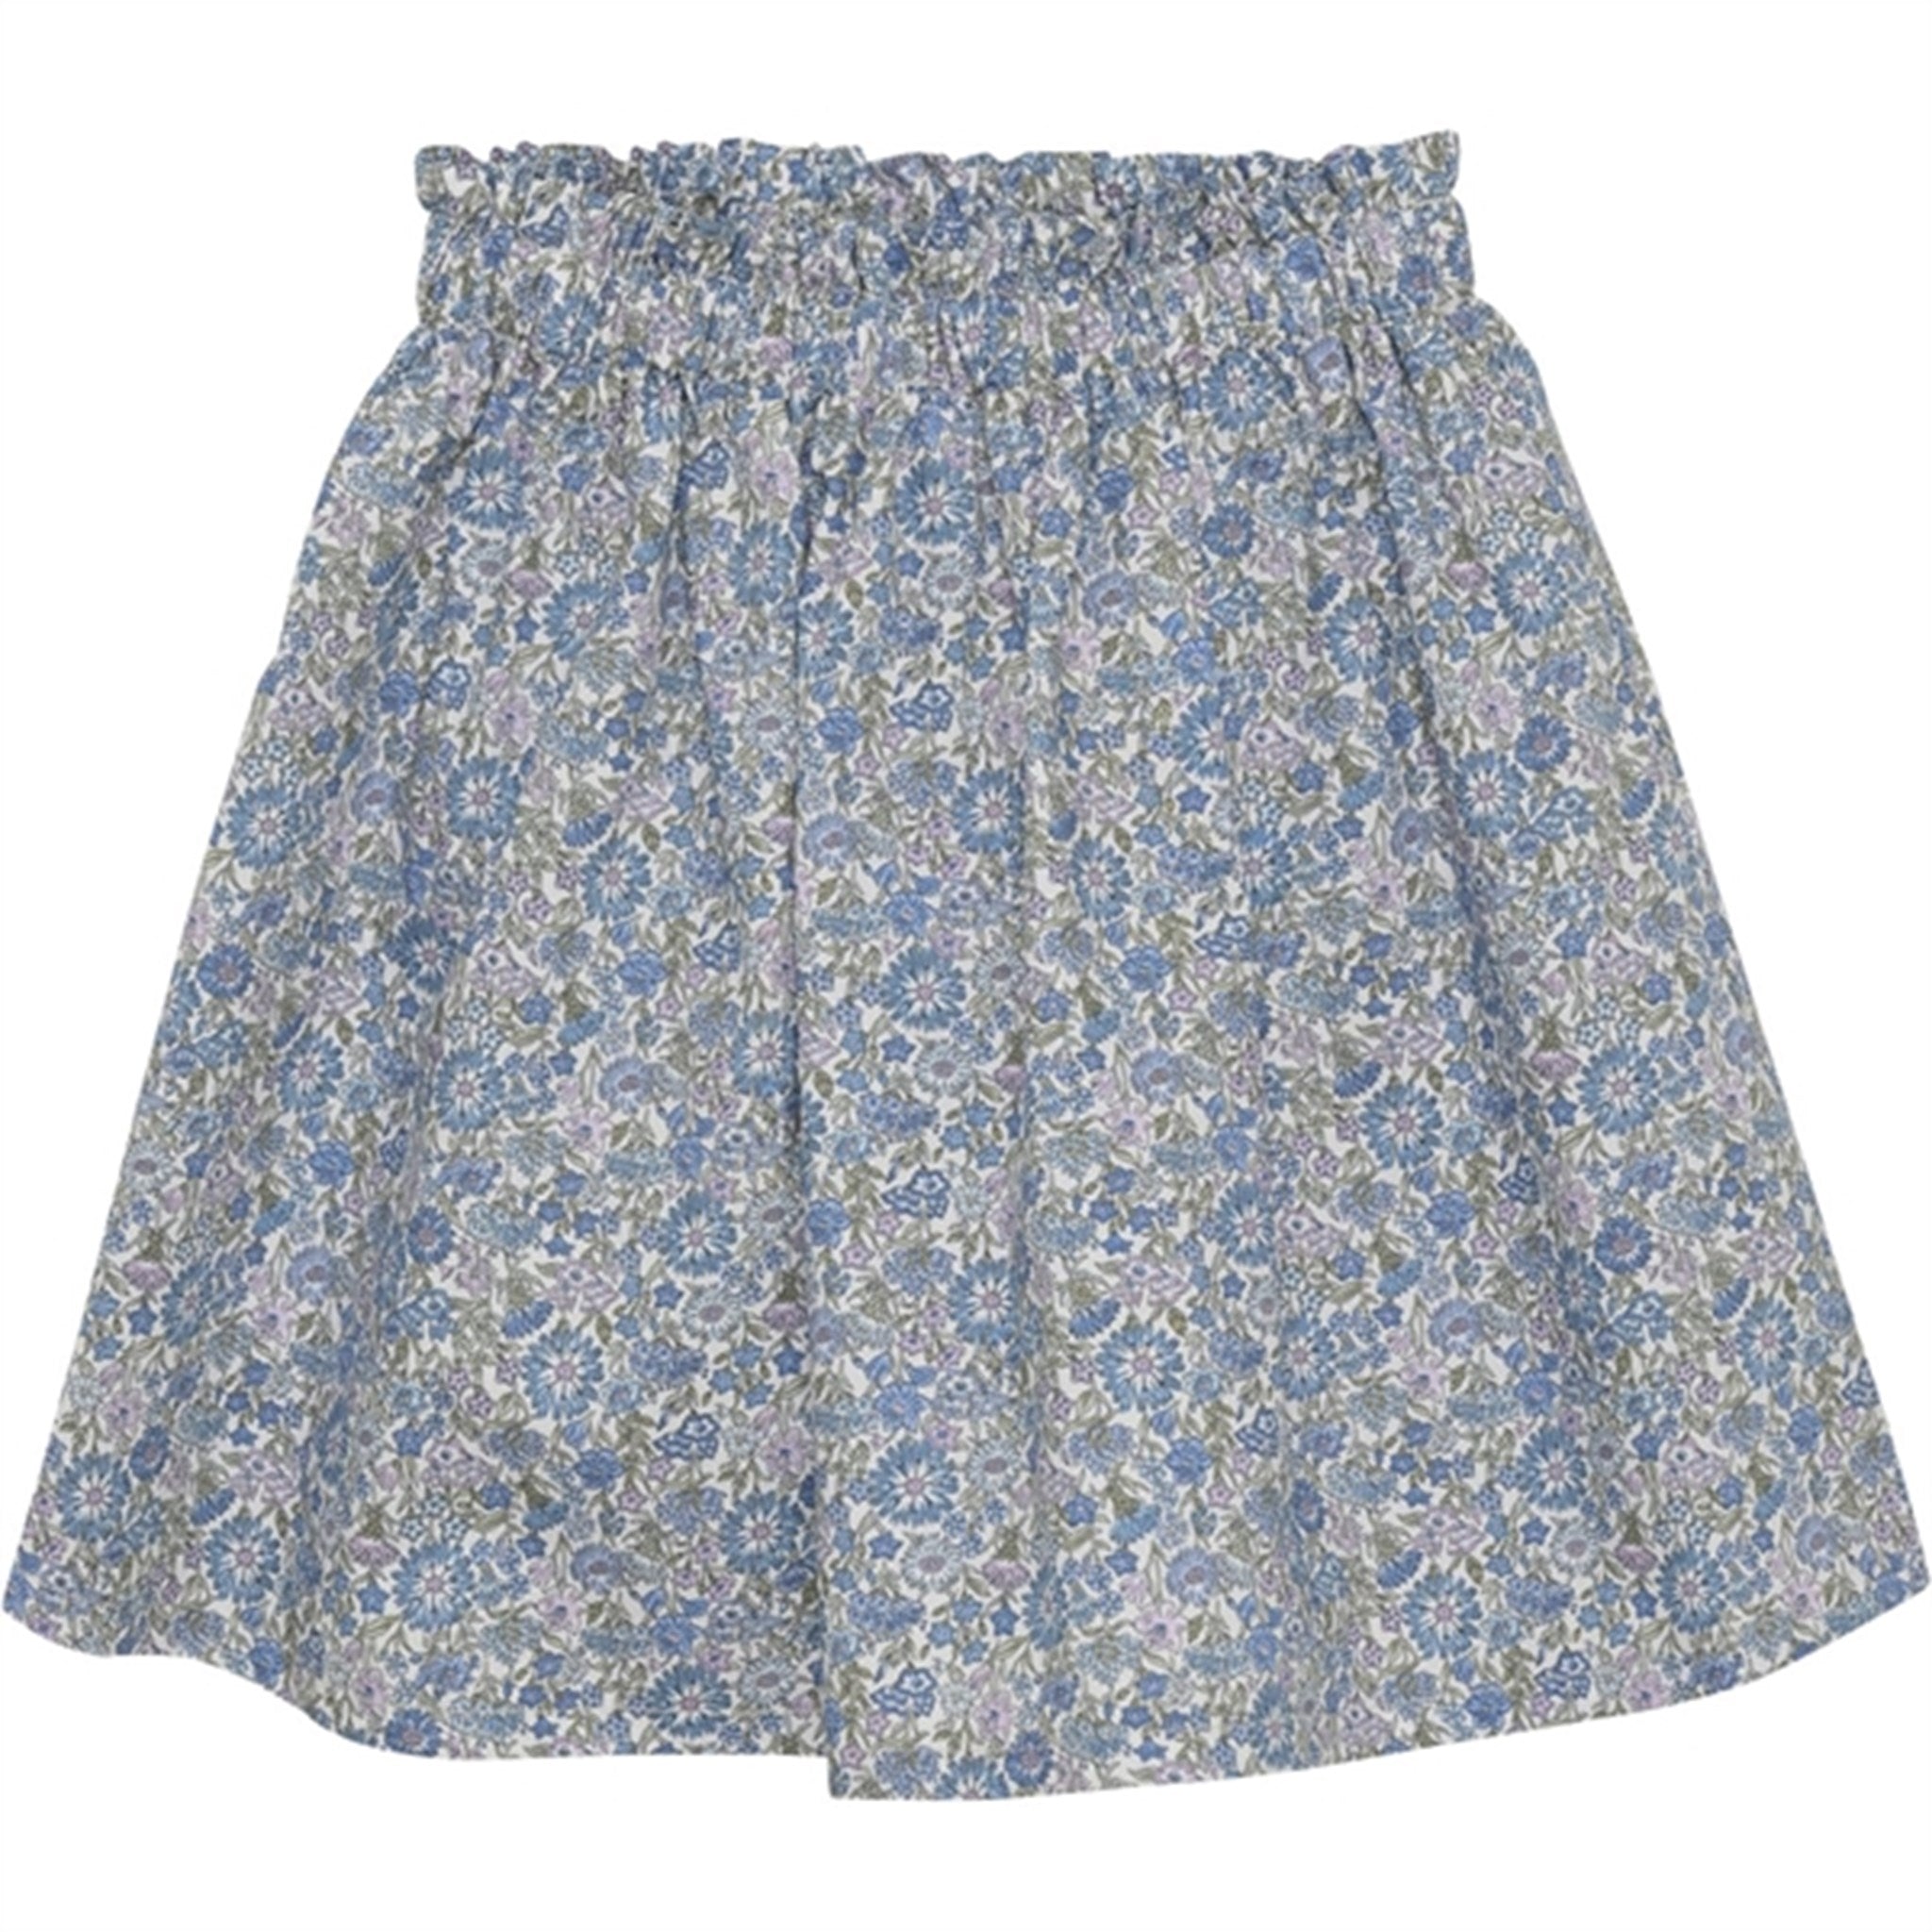 Huttelihut Liberty Fabric May Field Skirt